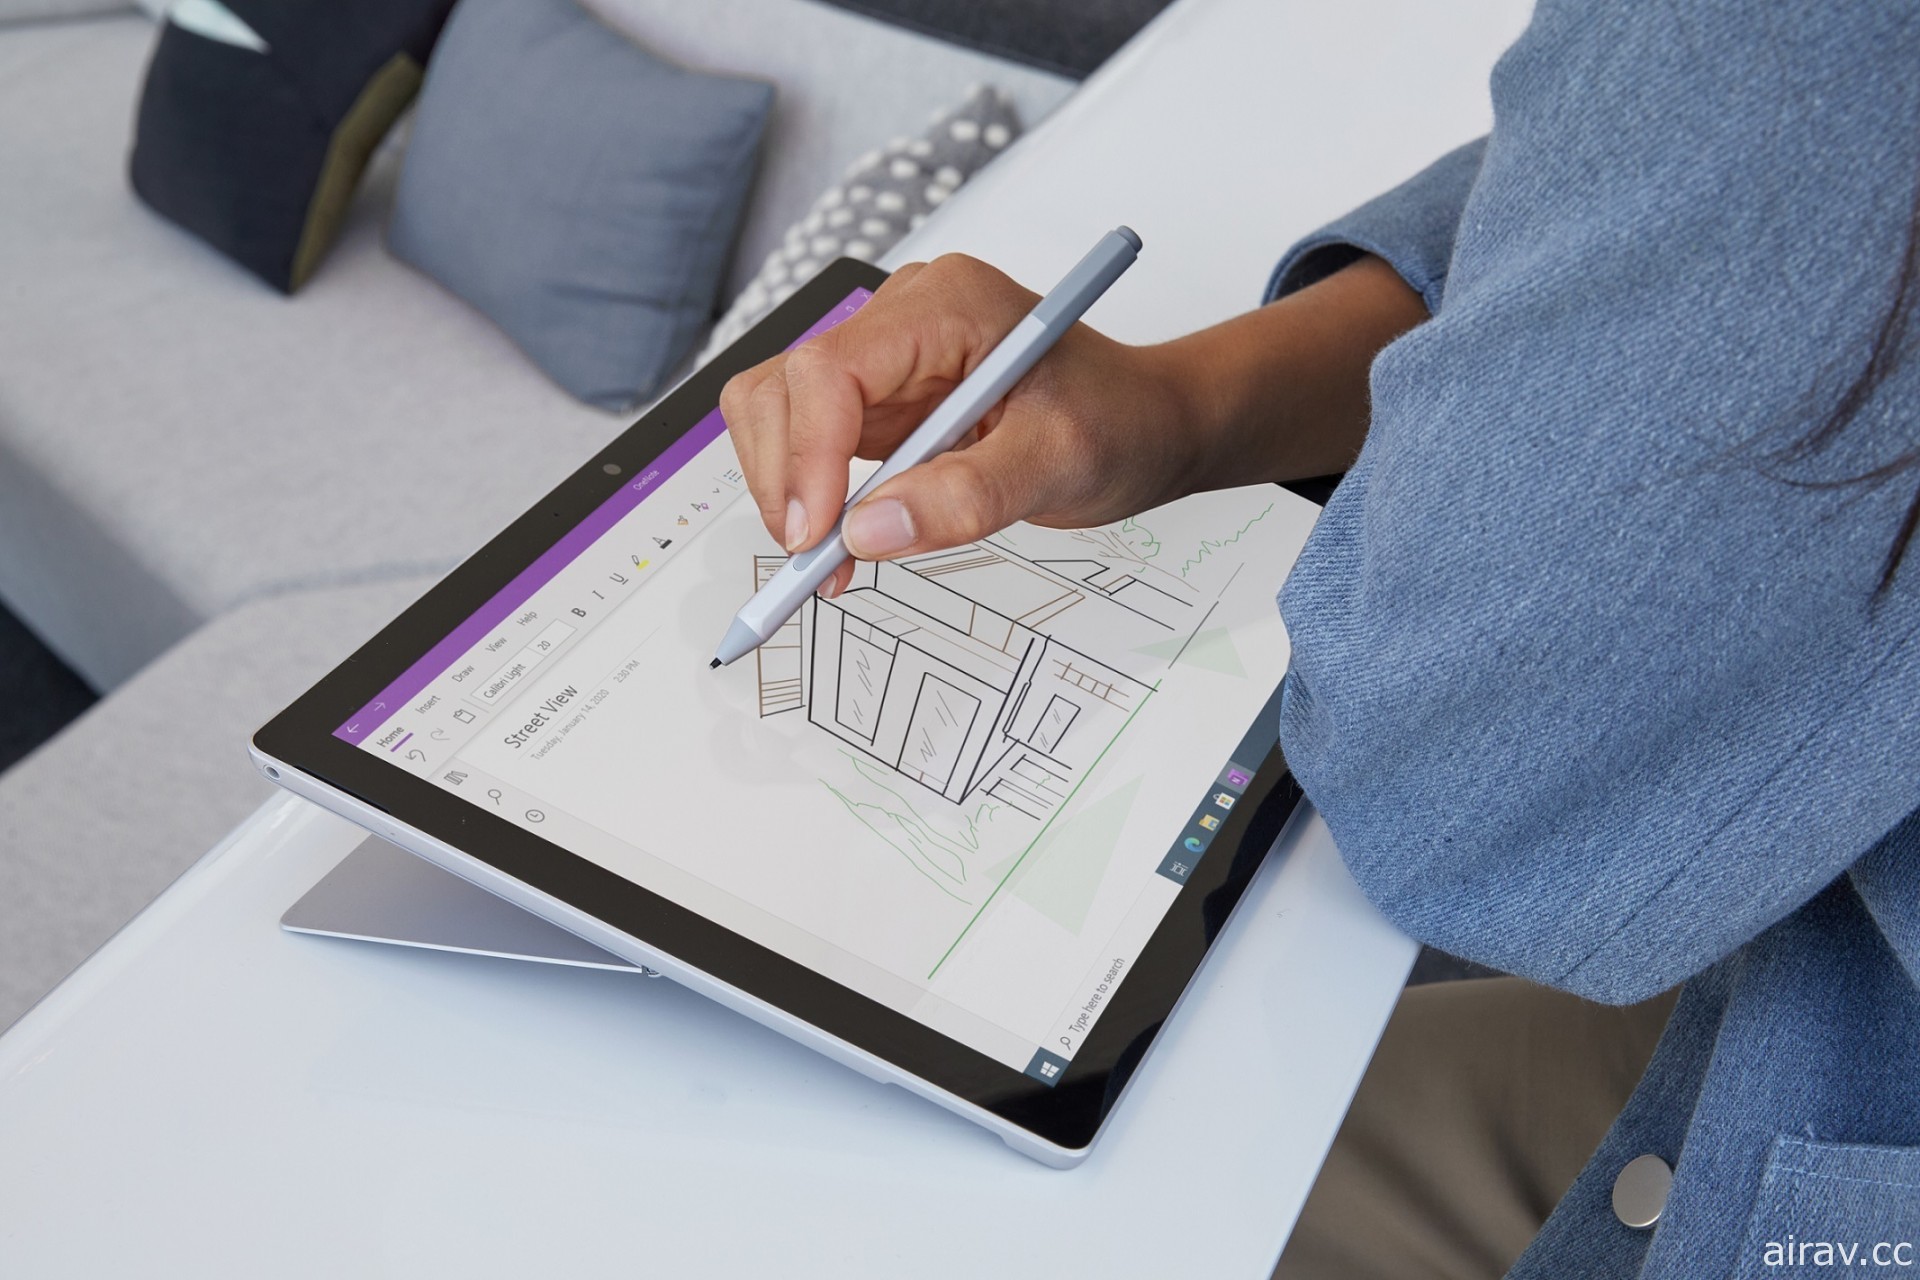 微軟發表 Surface Pro 7+ 商務版二合一筆電 LTE 功能將克服環境挑戰、保持聯繫